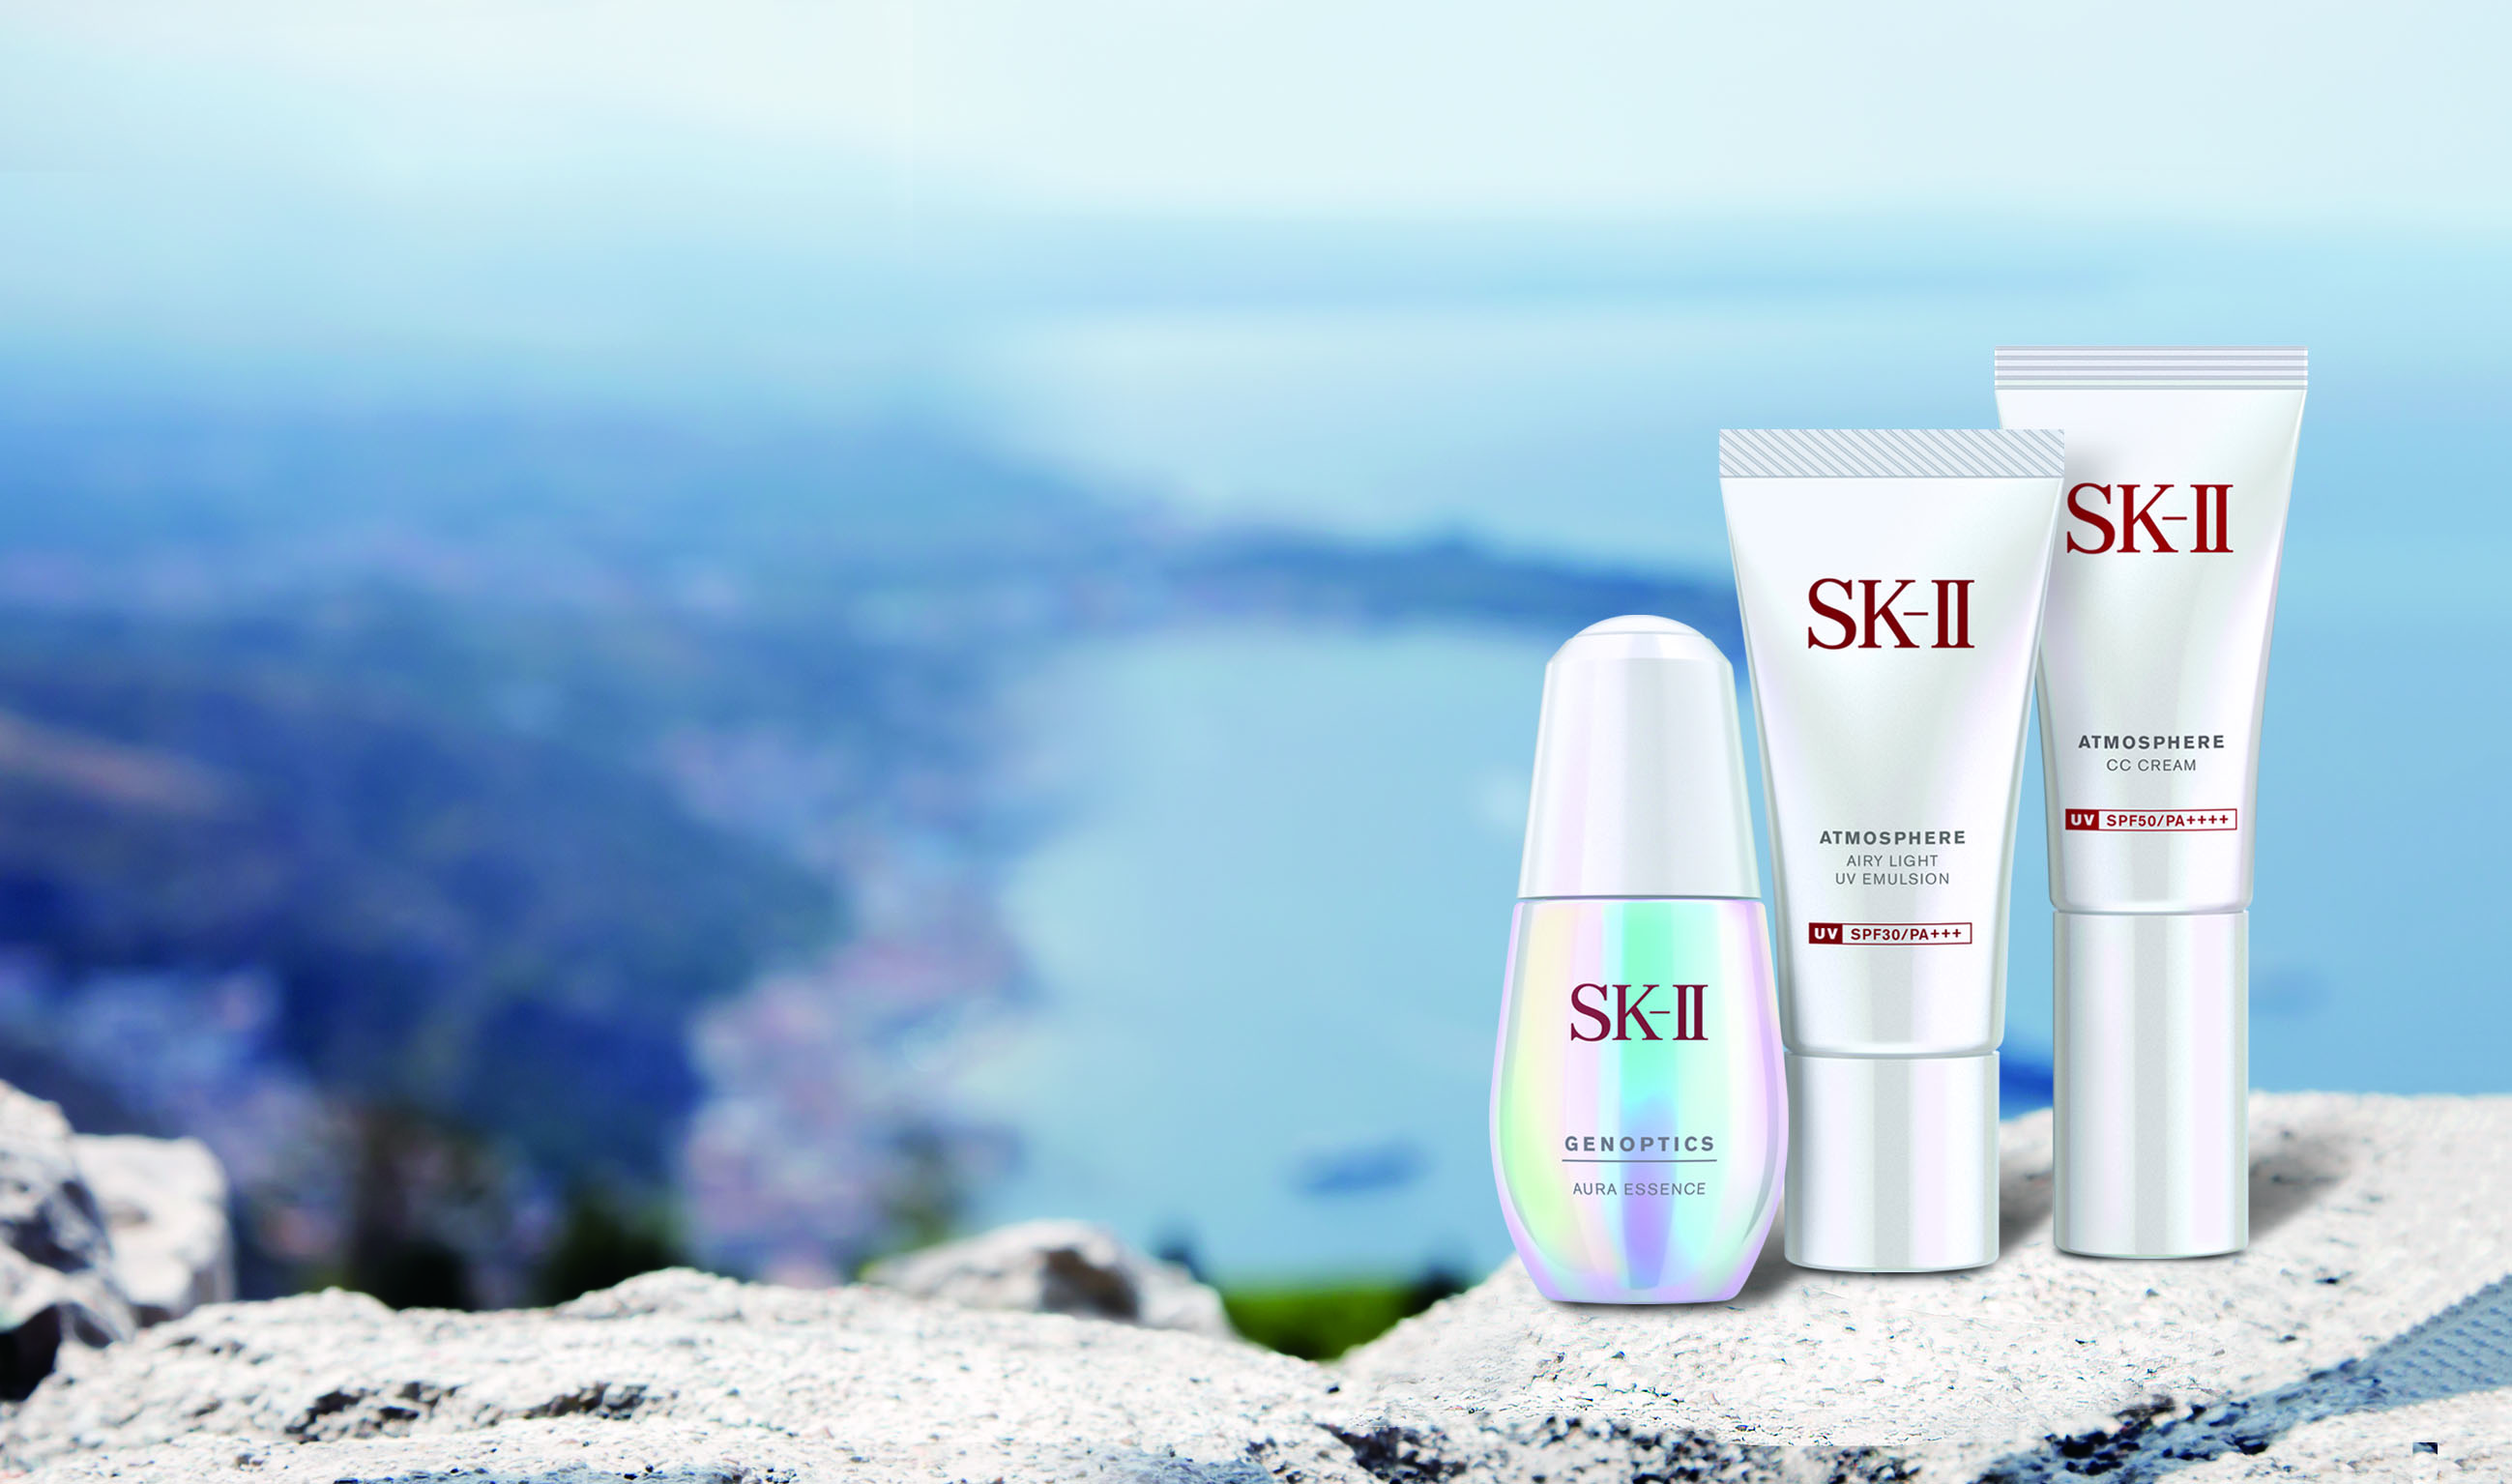 SK-II 超輕感全效防護乳、光感煥白CC霜、超肌因鑽光淨白精華_形象圖(無字).jpg